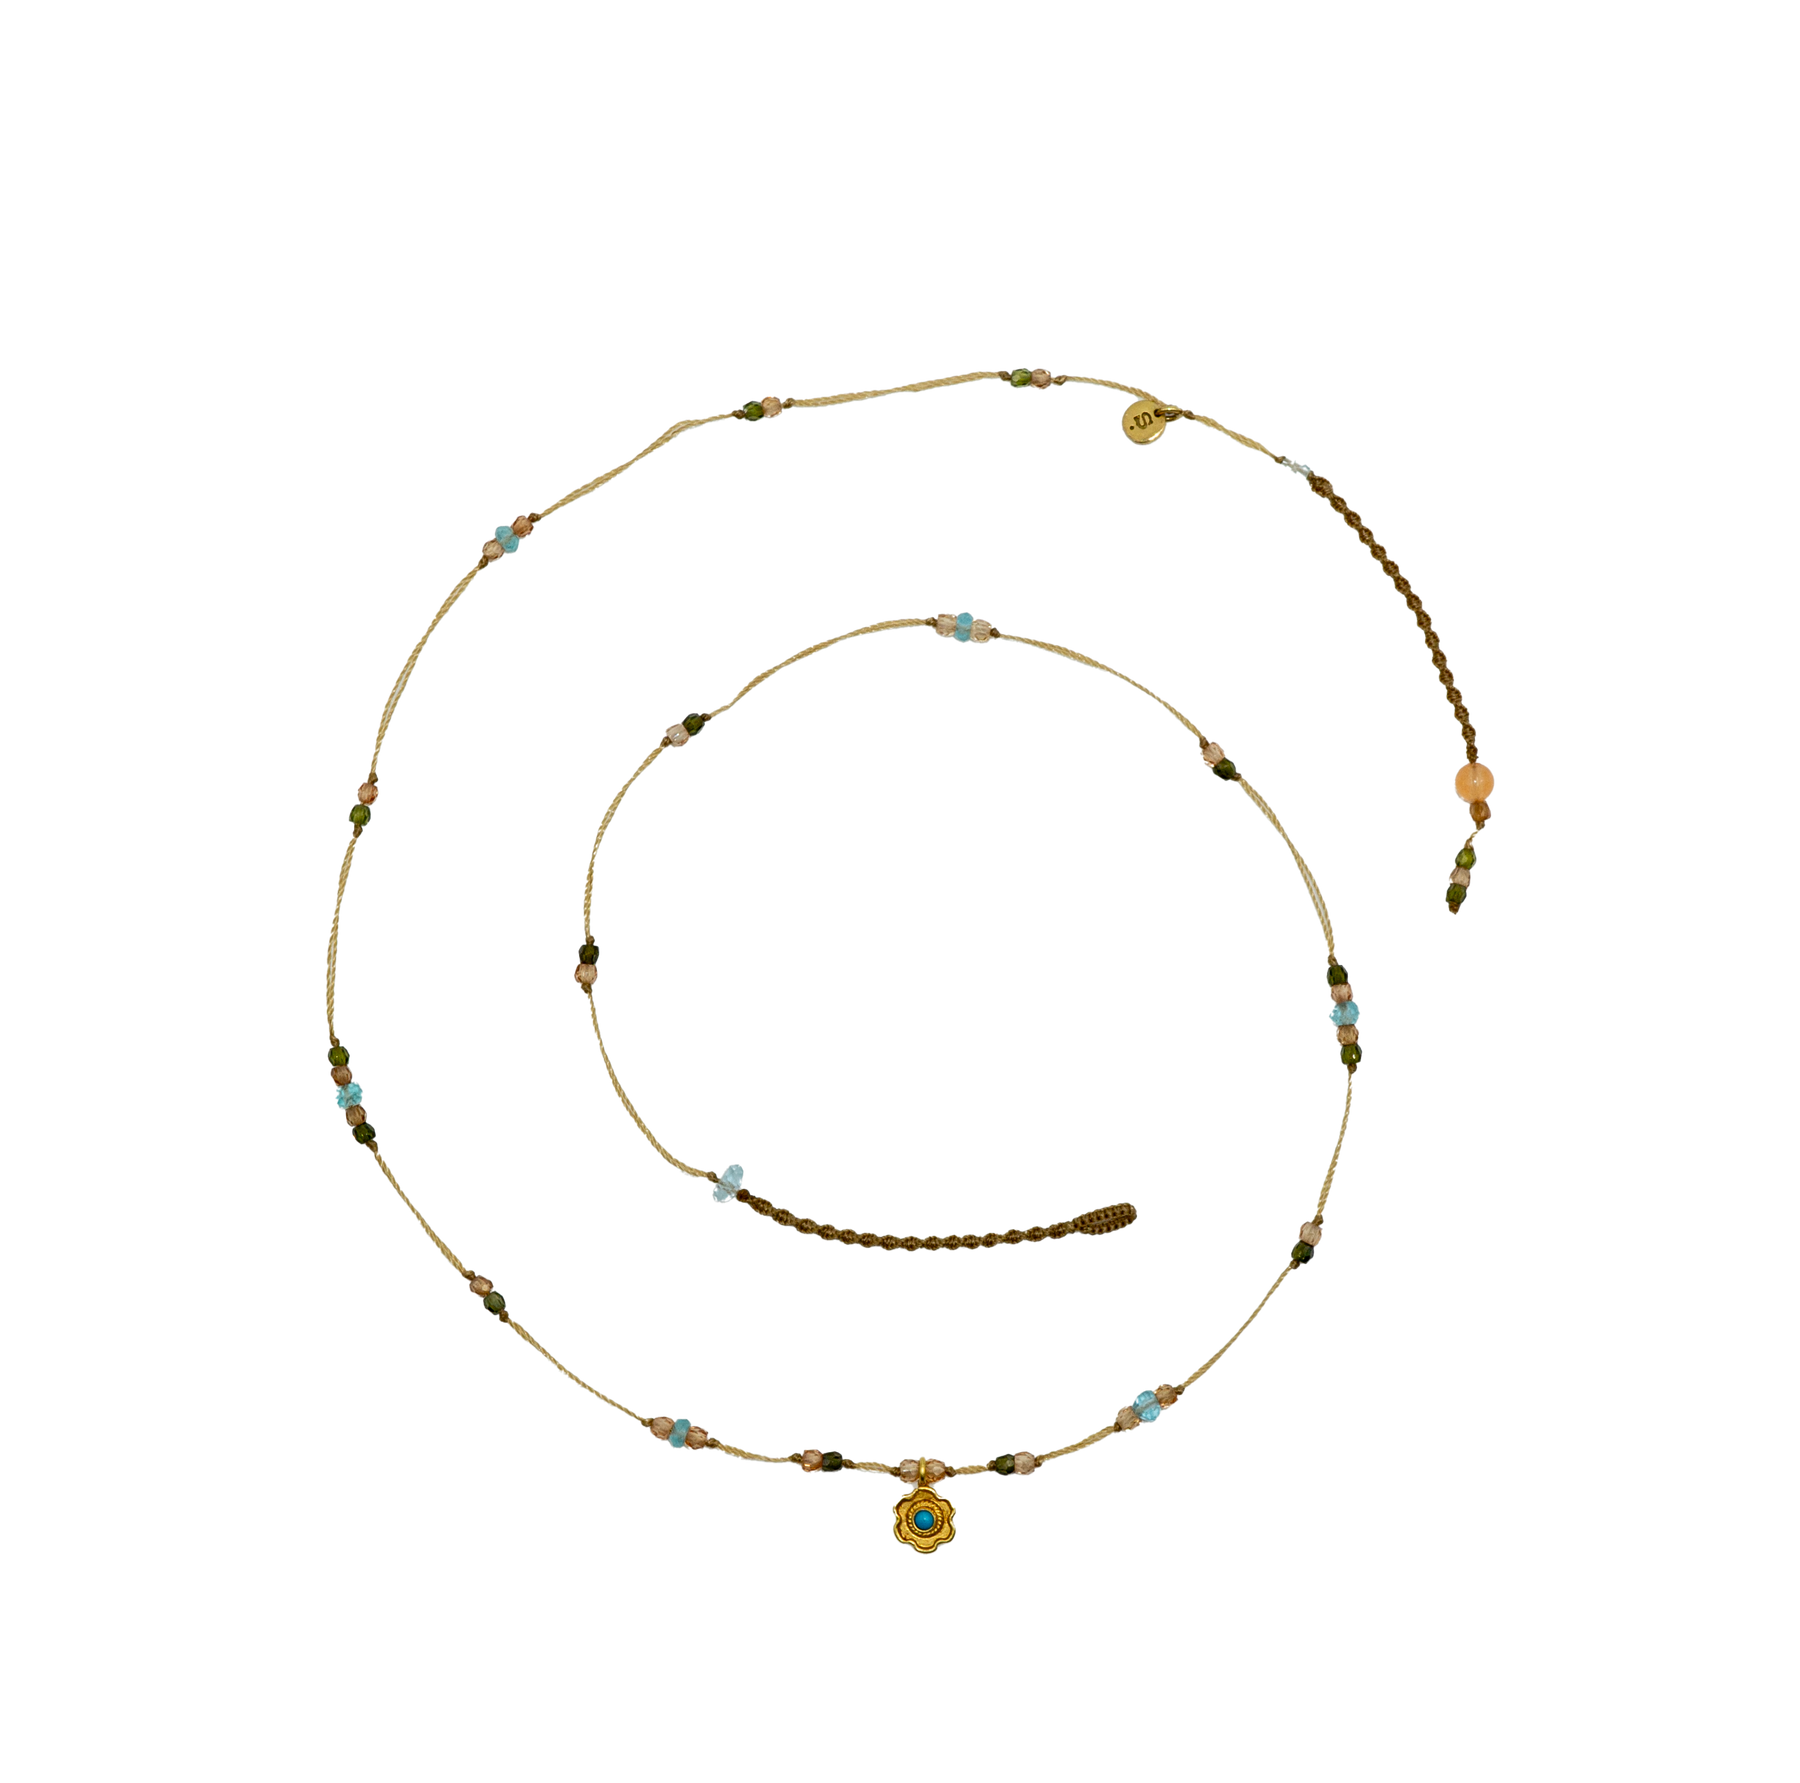 Goldie Flower Necklace - Turquoise - Mix Aquamarine - Beige Thread